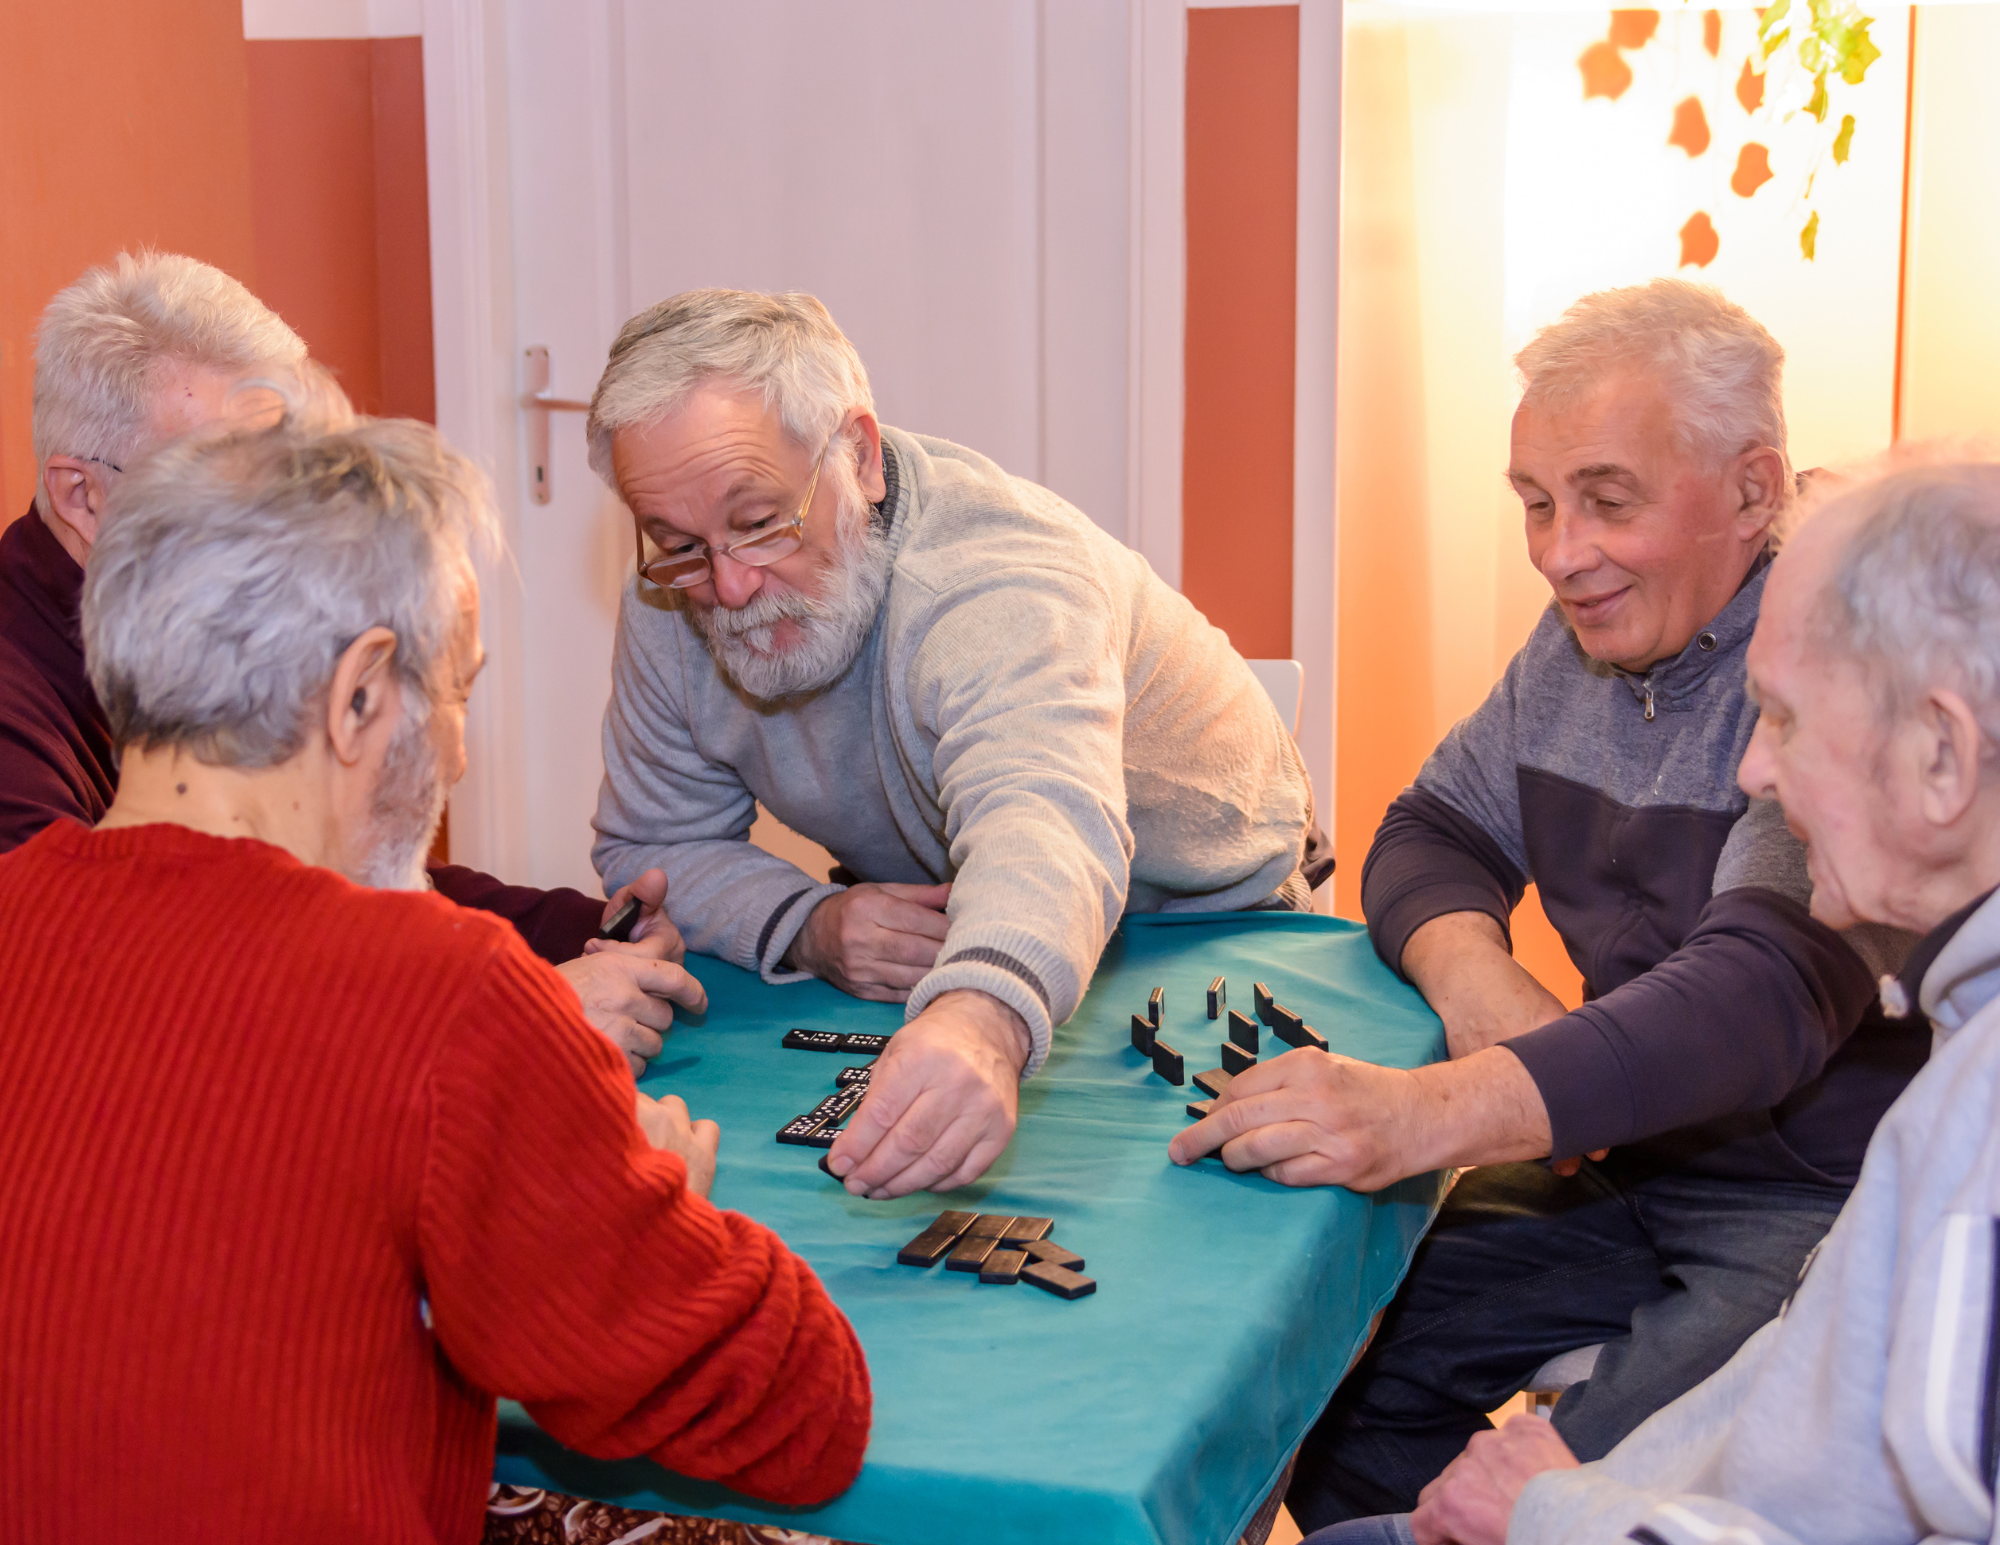 Autonomía de personas con deterioro cognitivo. Personas mayores jugando a un juego de mesa.